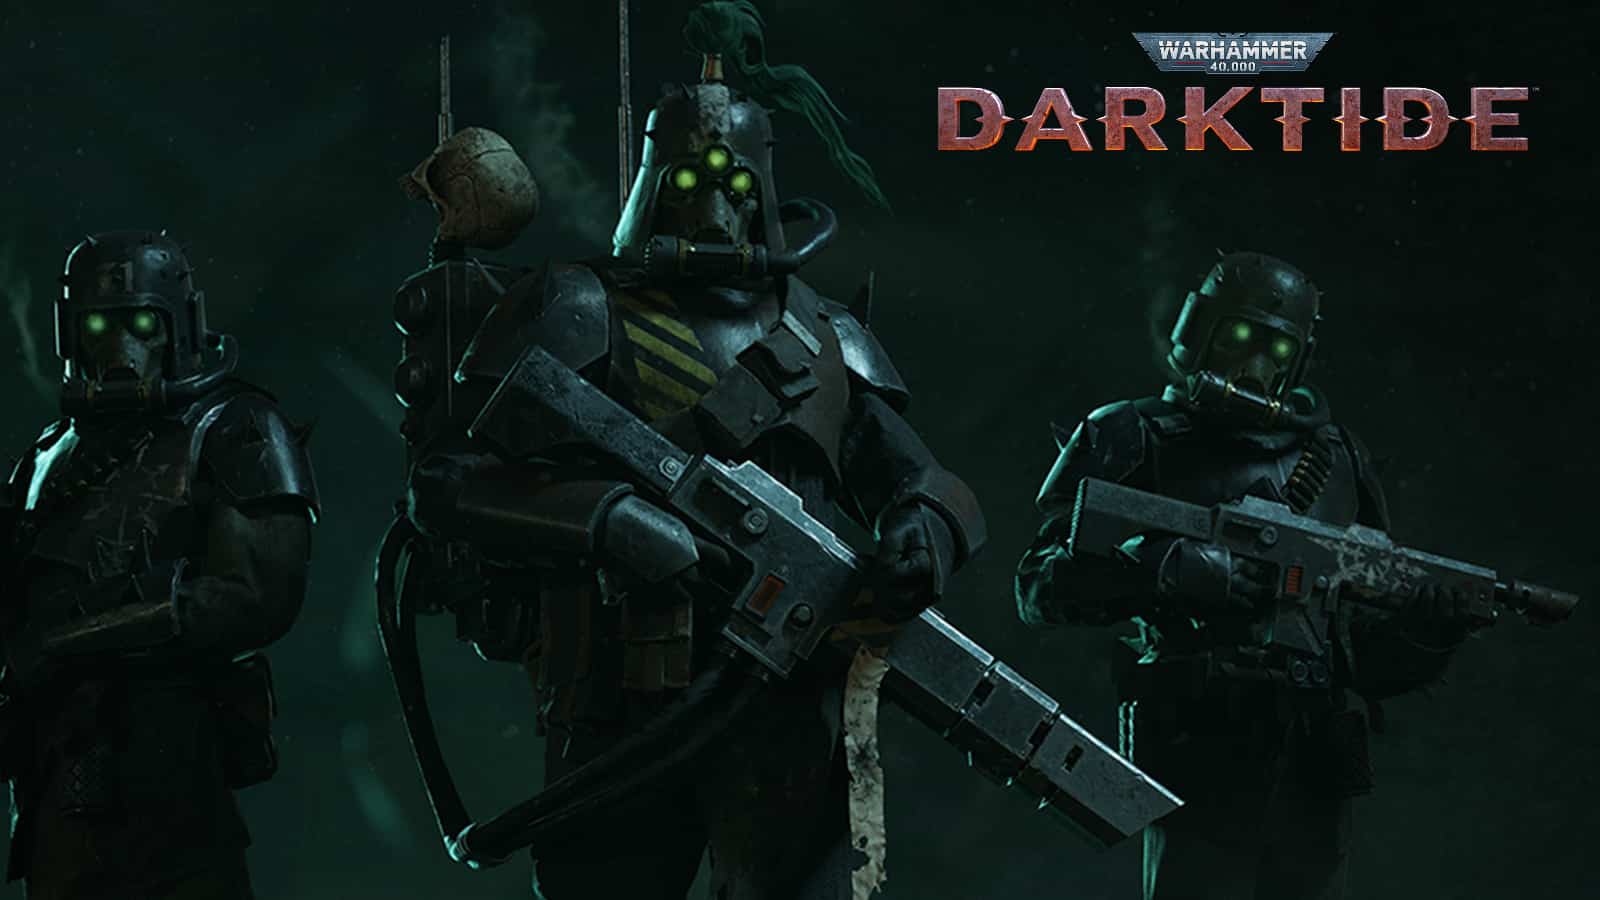 warhammer 40k 40,000 darktide three soldiers in gas masks